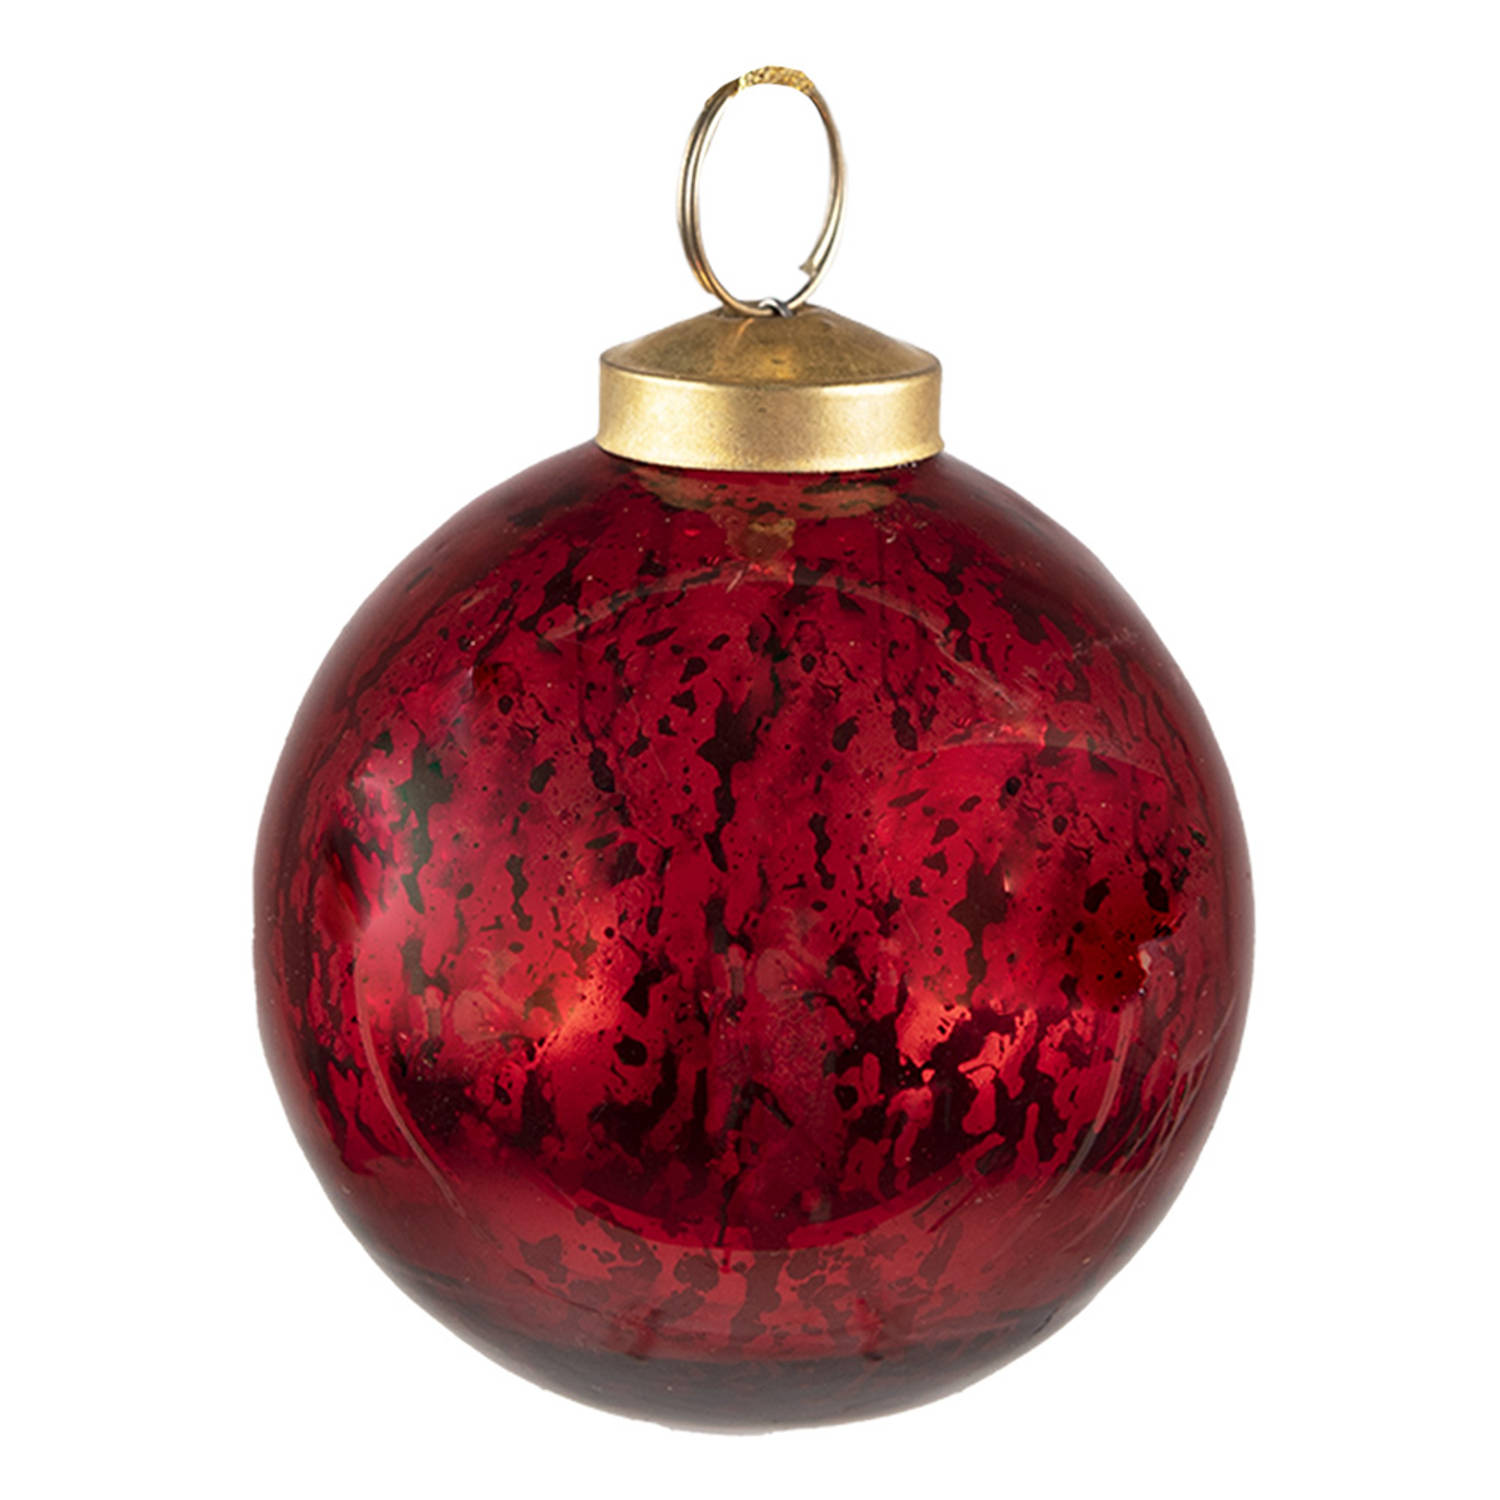 HAES DECO - Kerstbal - Formaat Ø 9x10 cm - Kleur Rood - Materiaal Glas - Kerstversiering, Kerstdecoratie, Decoratie Hanger, Kerstboomversiering